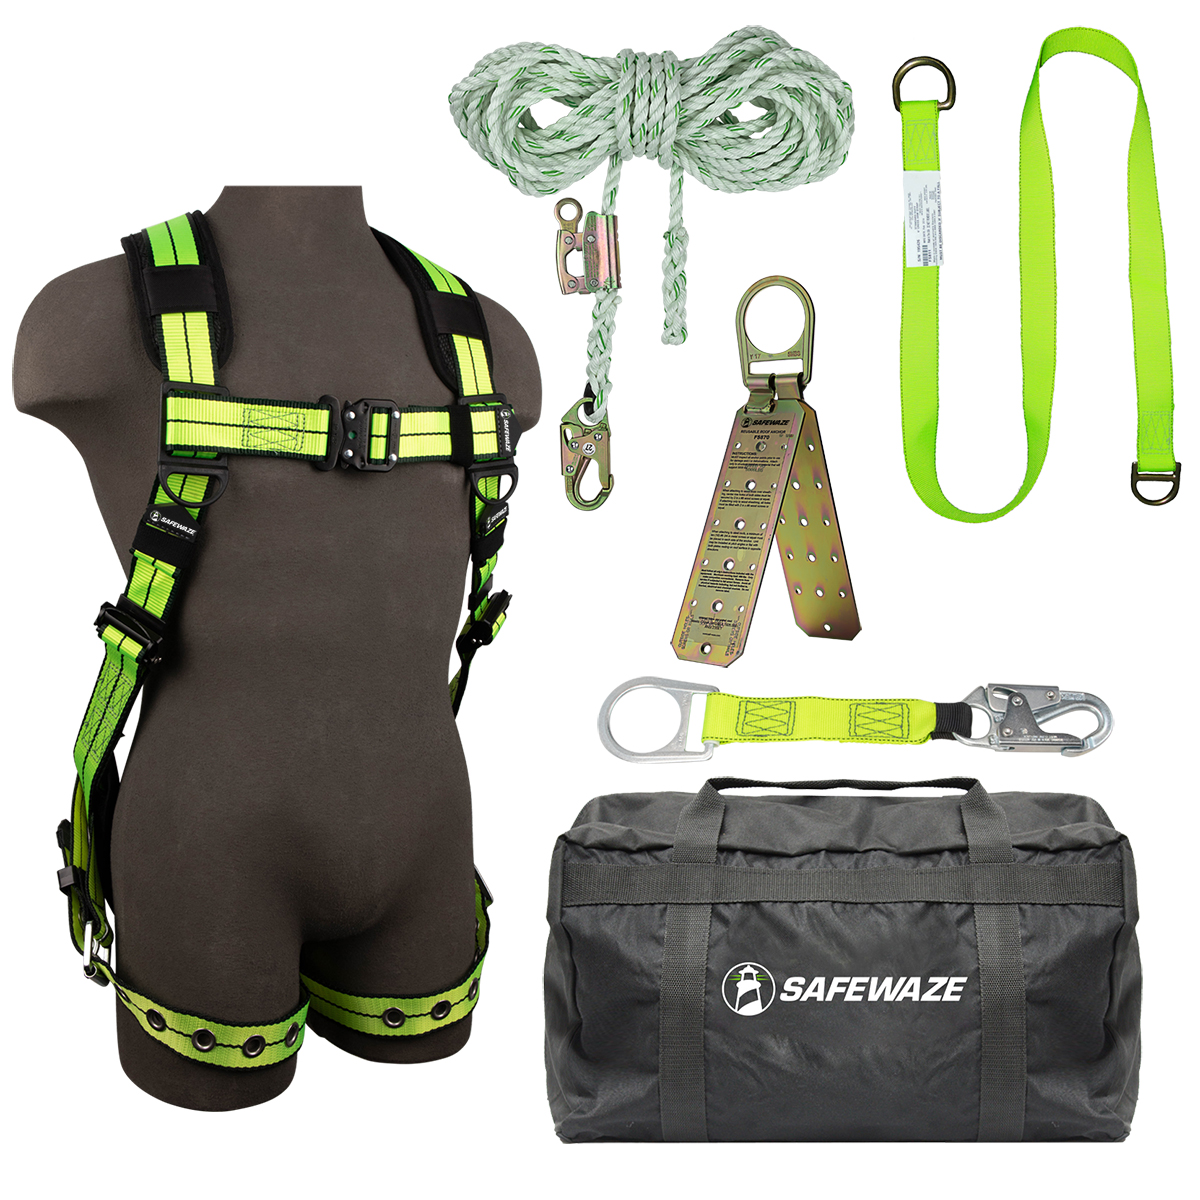 SafeWaze PRO+ Bag Roof Kit: FS-FLEX185-L/XL, FS700-50GA, FS813, FS811-20, FS870, FS8175